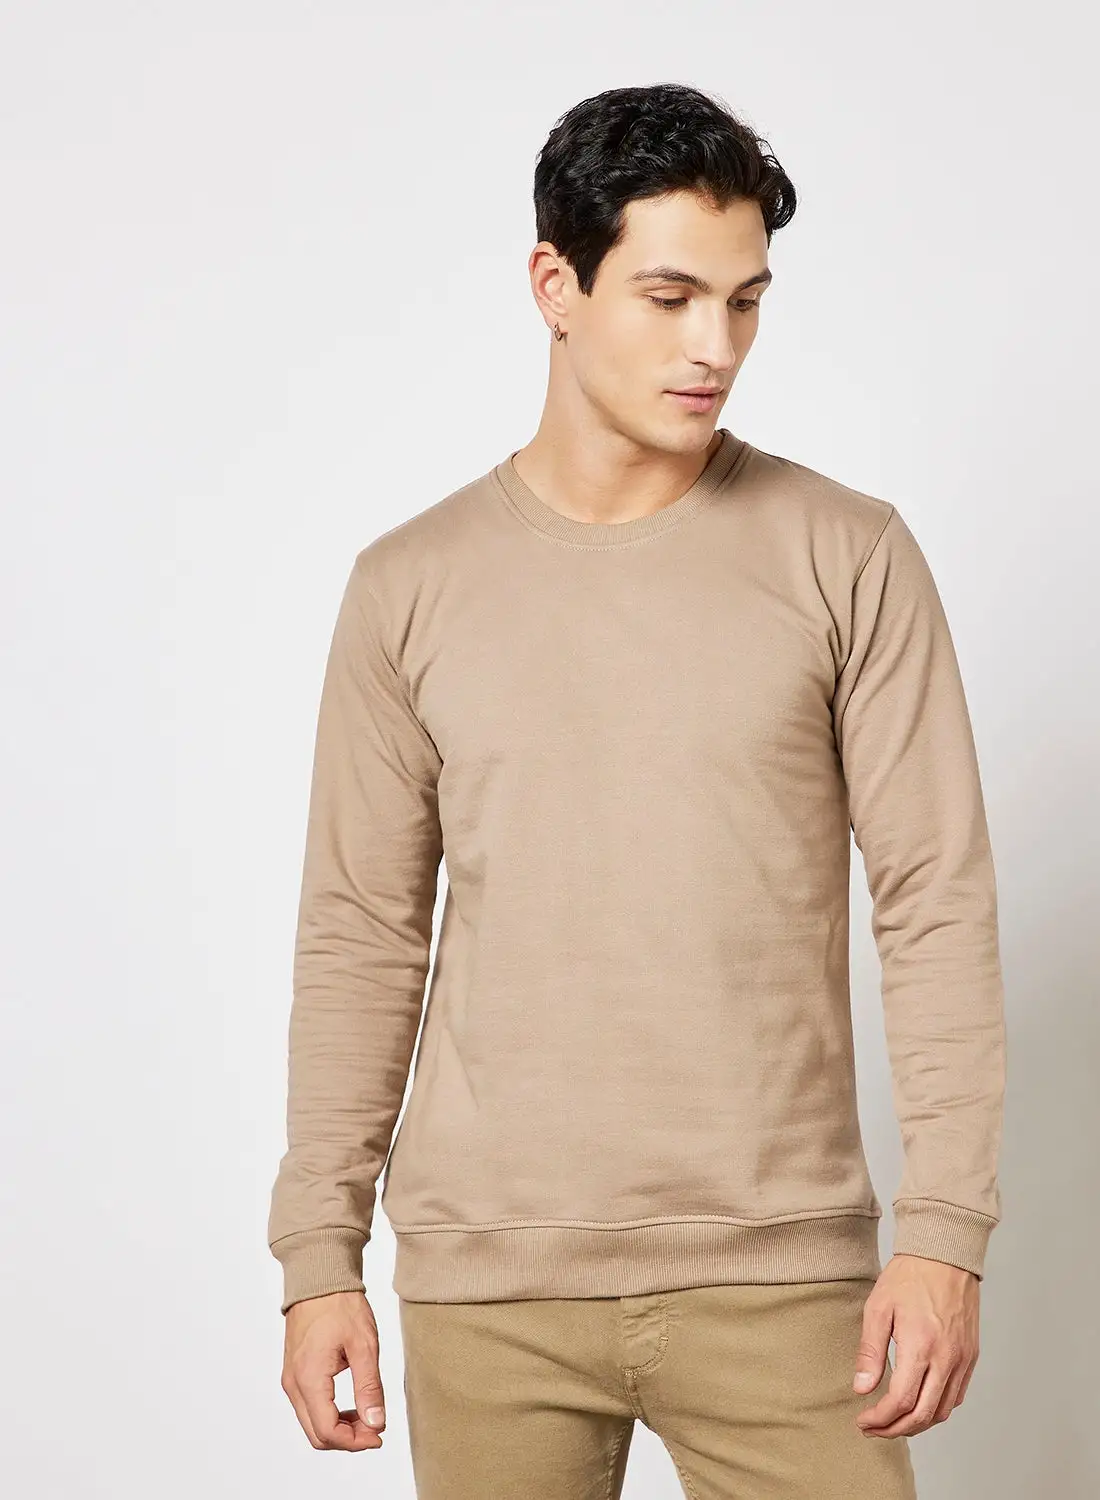 STATE 8 Basic Cotton Sweatshirt Beige